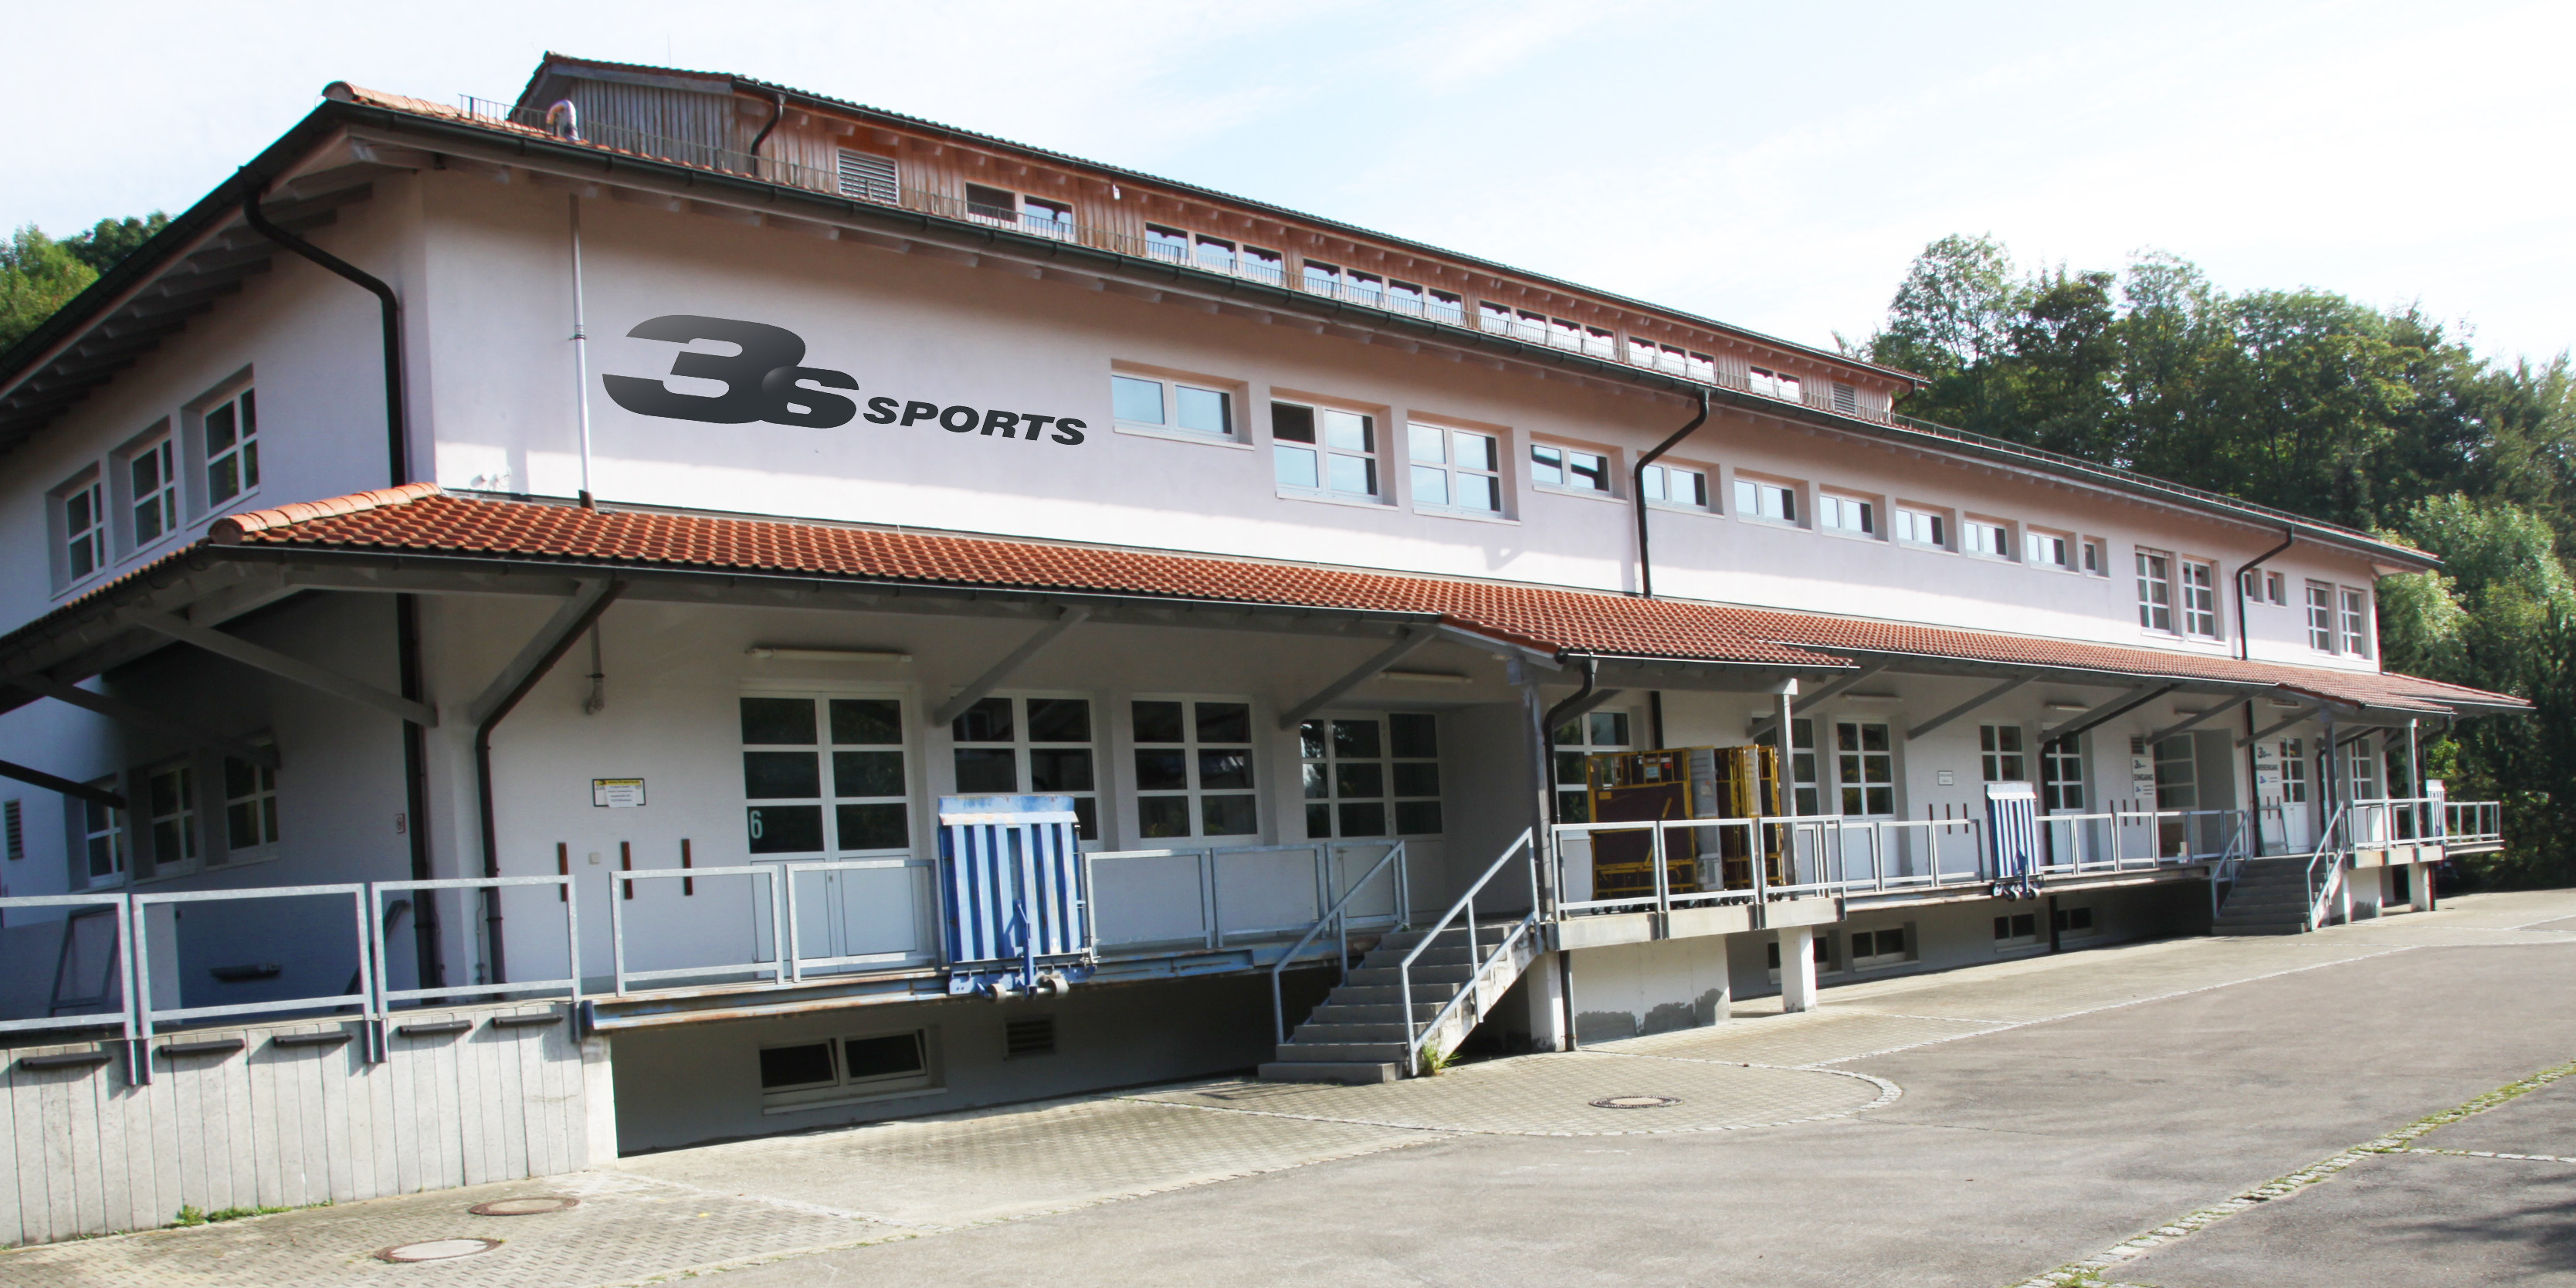 3s-sports GmbH in Münsingen